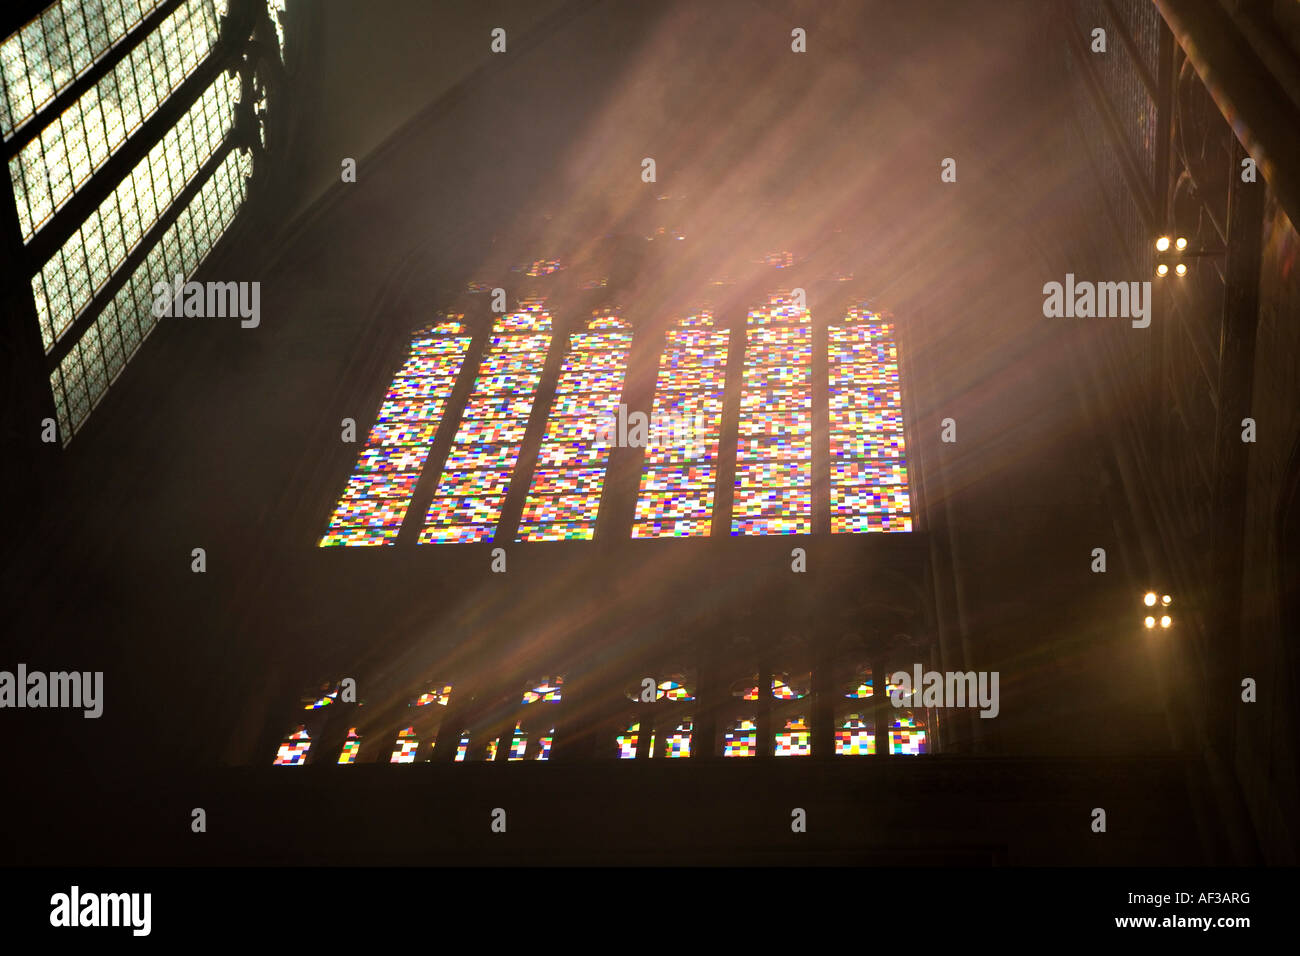 Allemagne, Cologne, dans une nouvelle fenêtre dans la cathédrale de Cologne qui a été décoré par le célèbre artiste allemand Gerhard Richter Banque D'Images